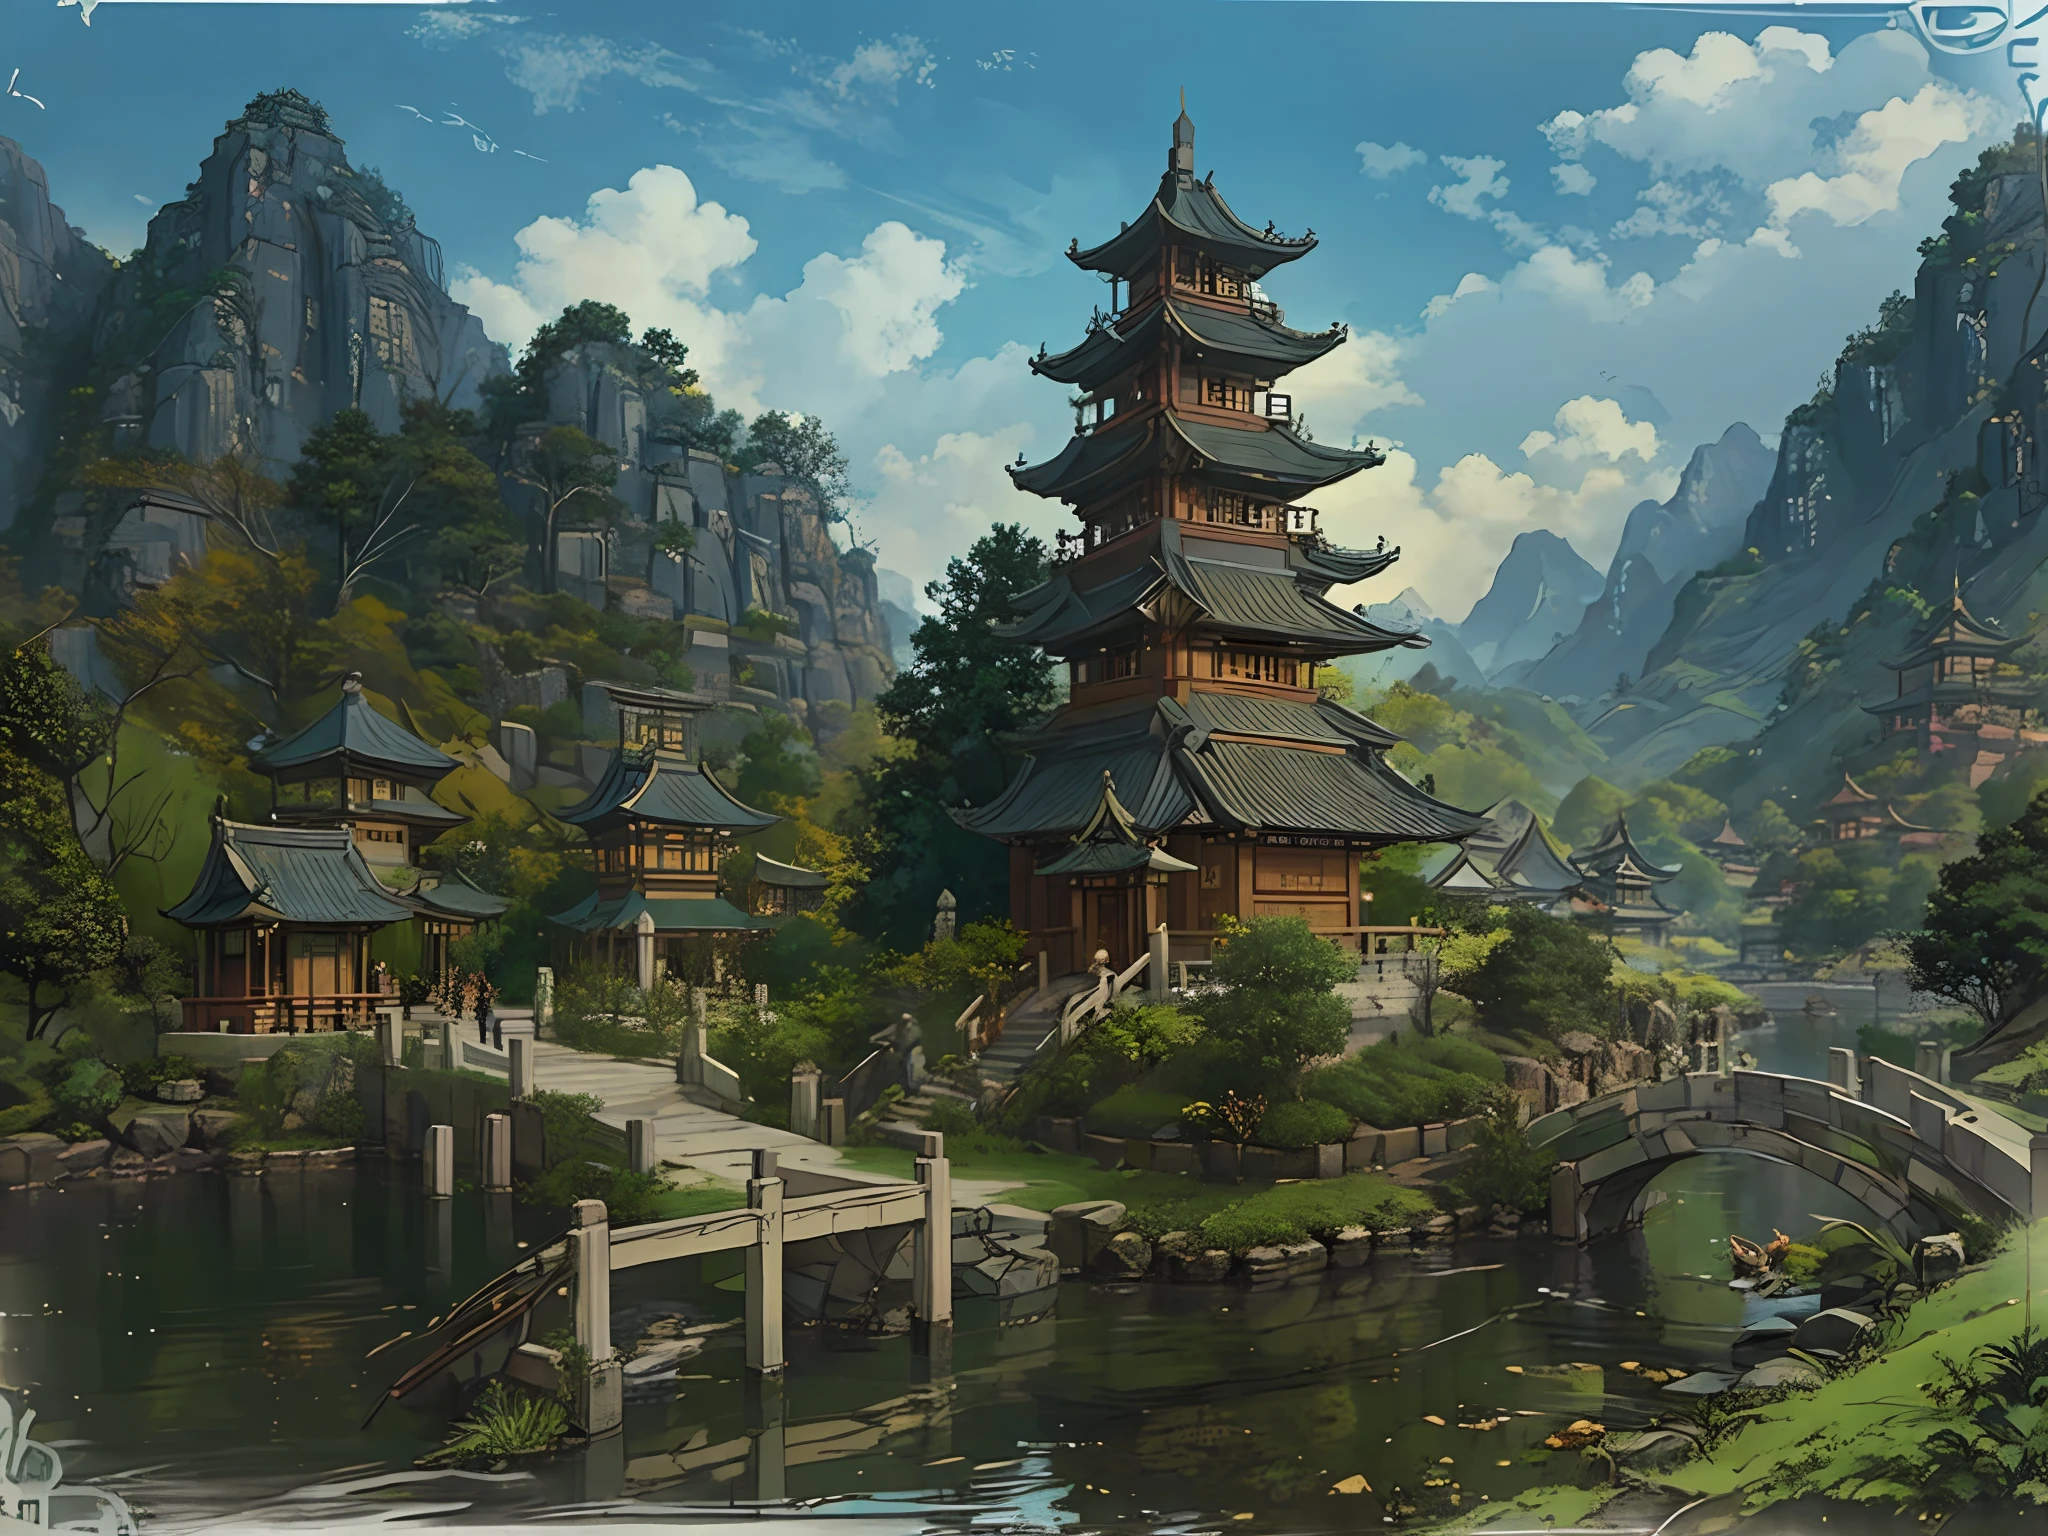 有桥梁和宝塔的中国村庄风景, 景观艺术品, G Ryurian艺术风格, 寺庙背景, 景观游戏概念艺术, 详细风景 - 宽度 672, 精美的艺术插图, zen 寺庙背景,